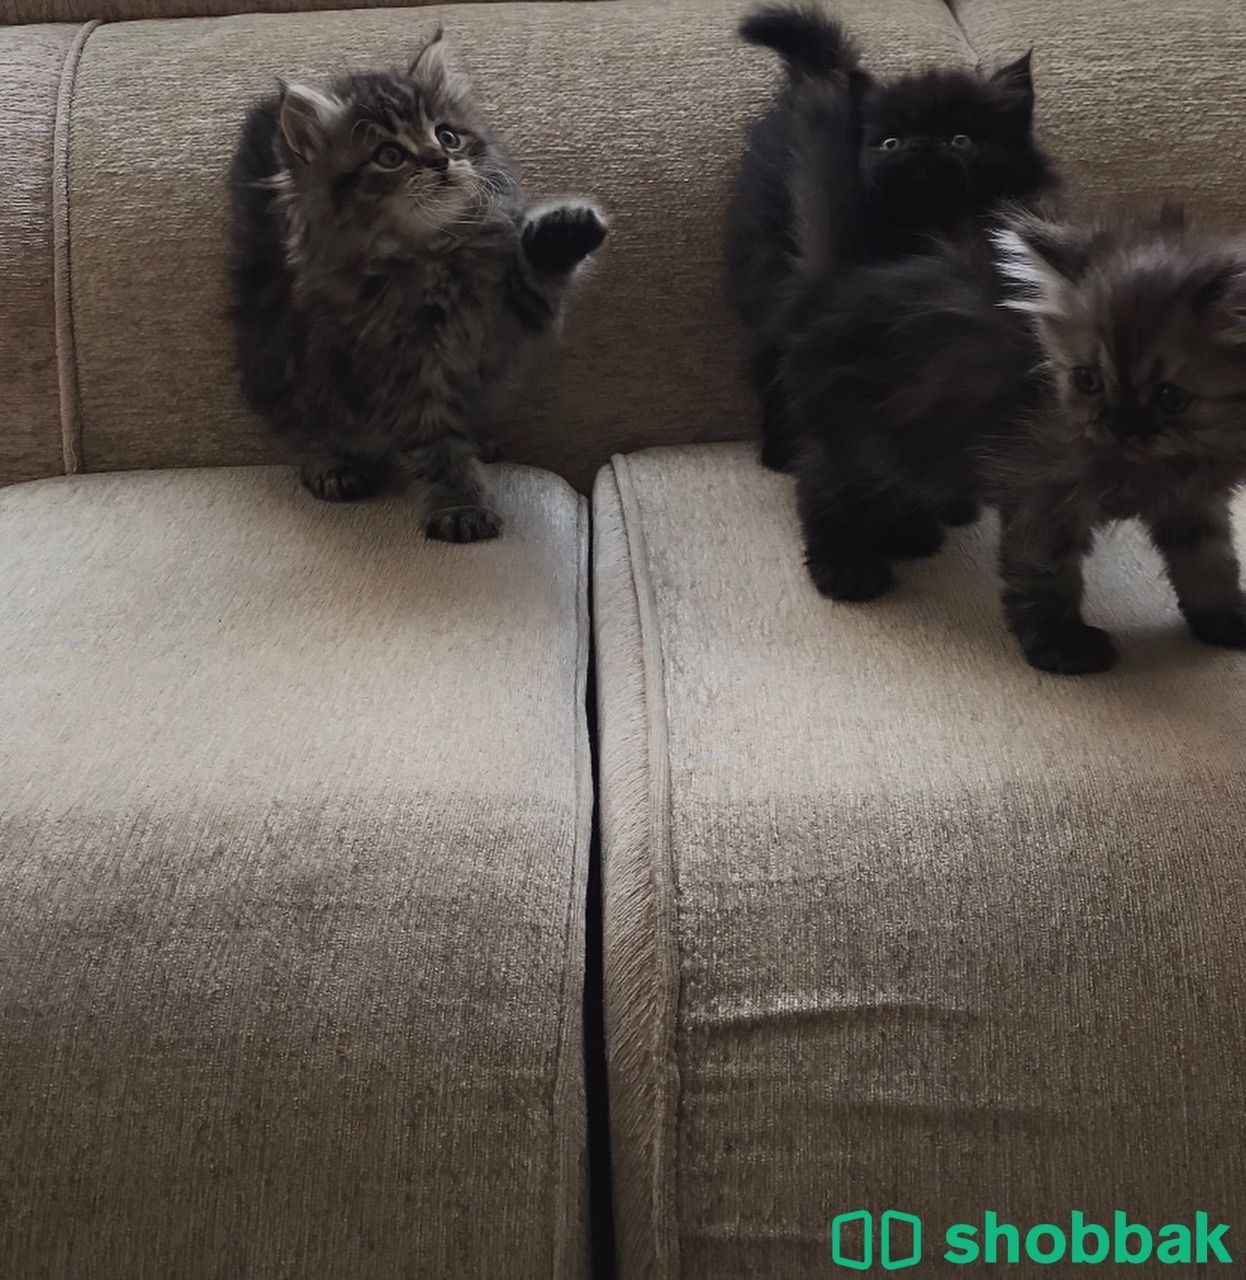 ثلاث قطط شيرازيه للبيع Shobbak Saudi Arabia